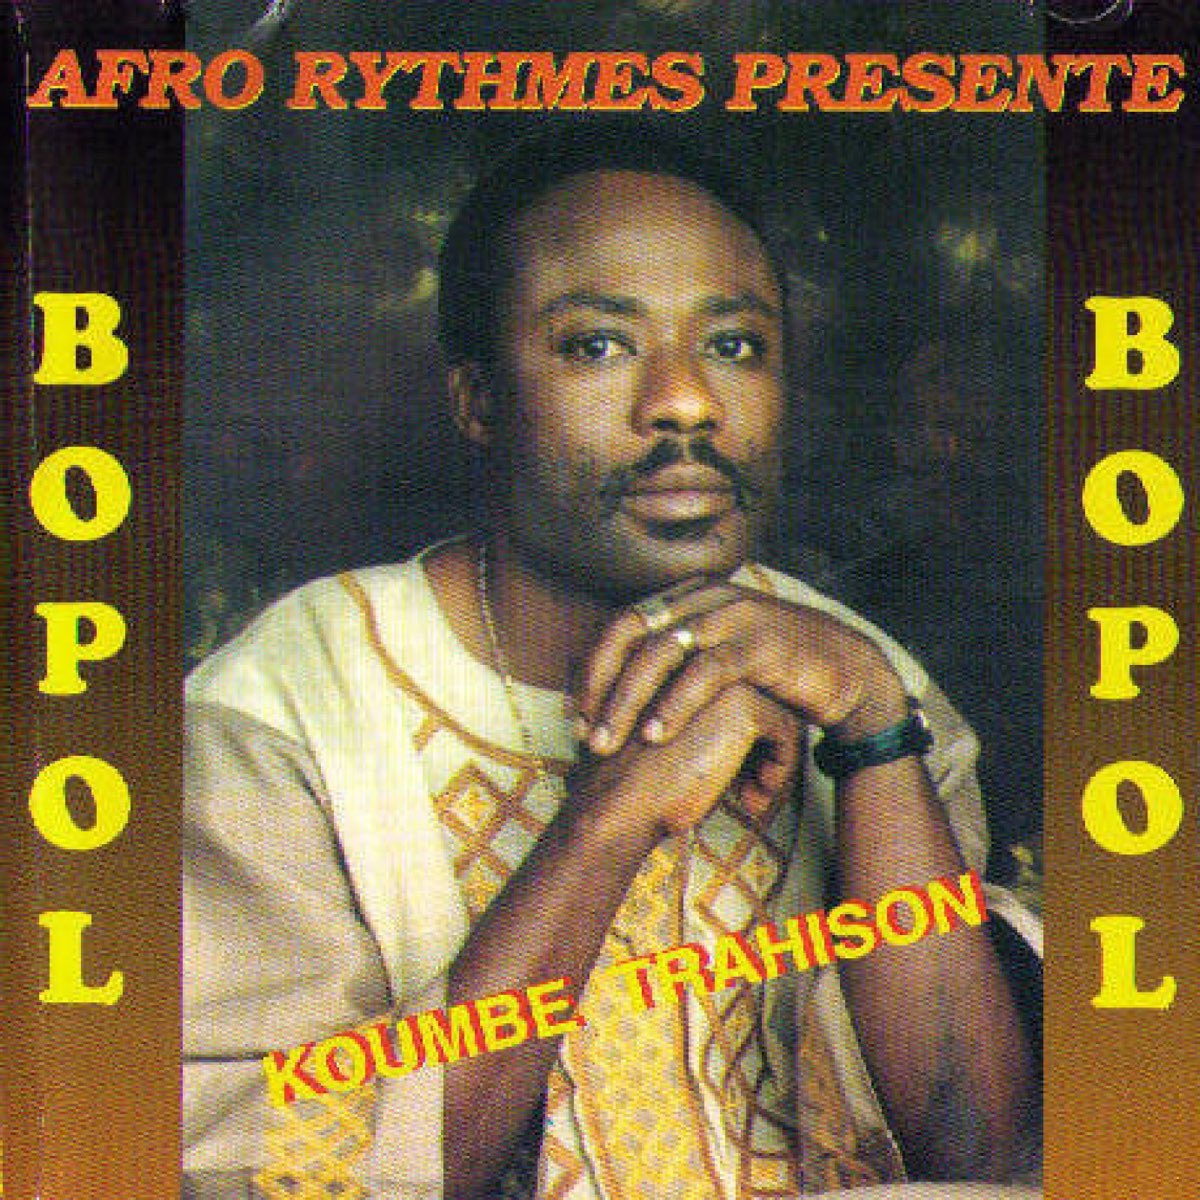 ‎Koumbe Trahison by Bopol on Apple Music